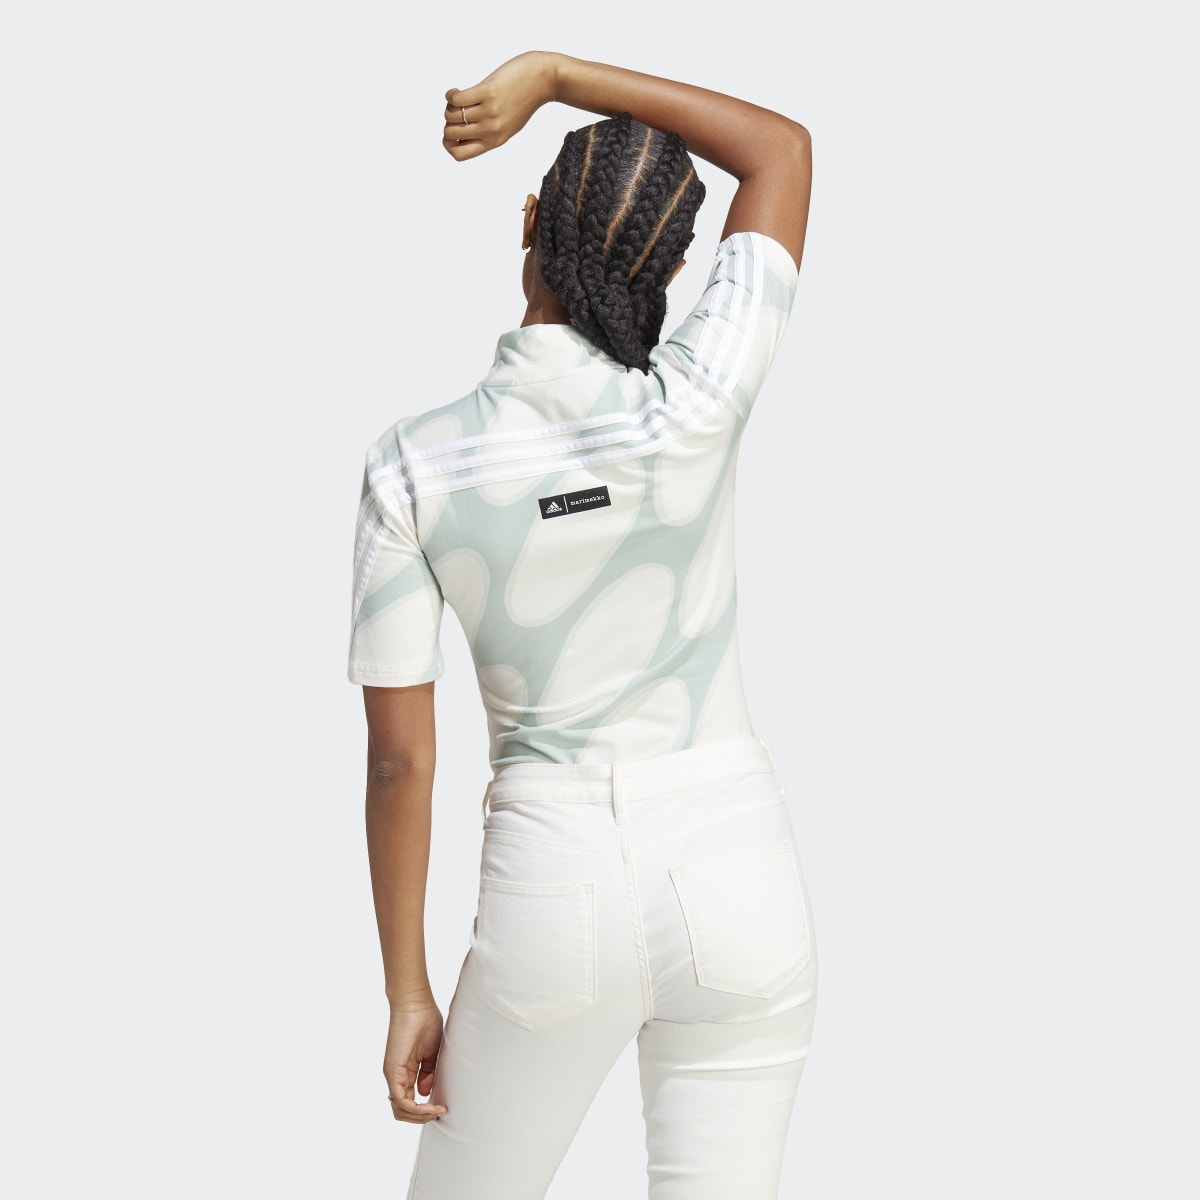 Adidas x Marimekko Future Icons Three Stripes Bodysuit. 4